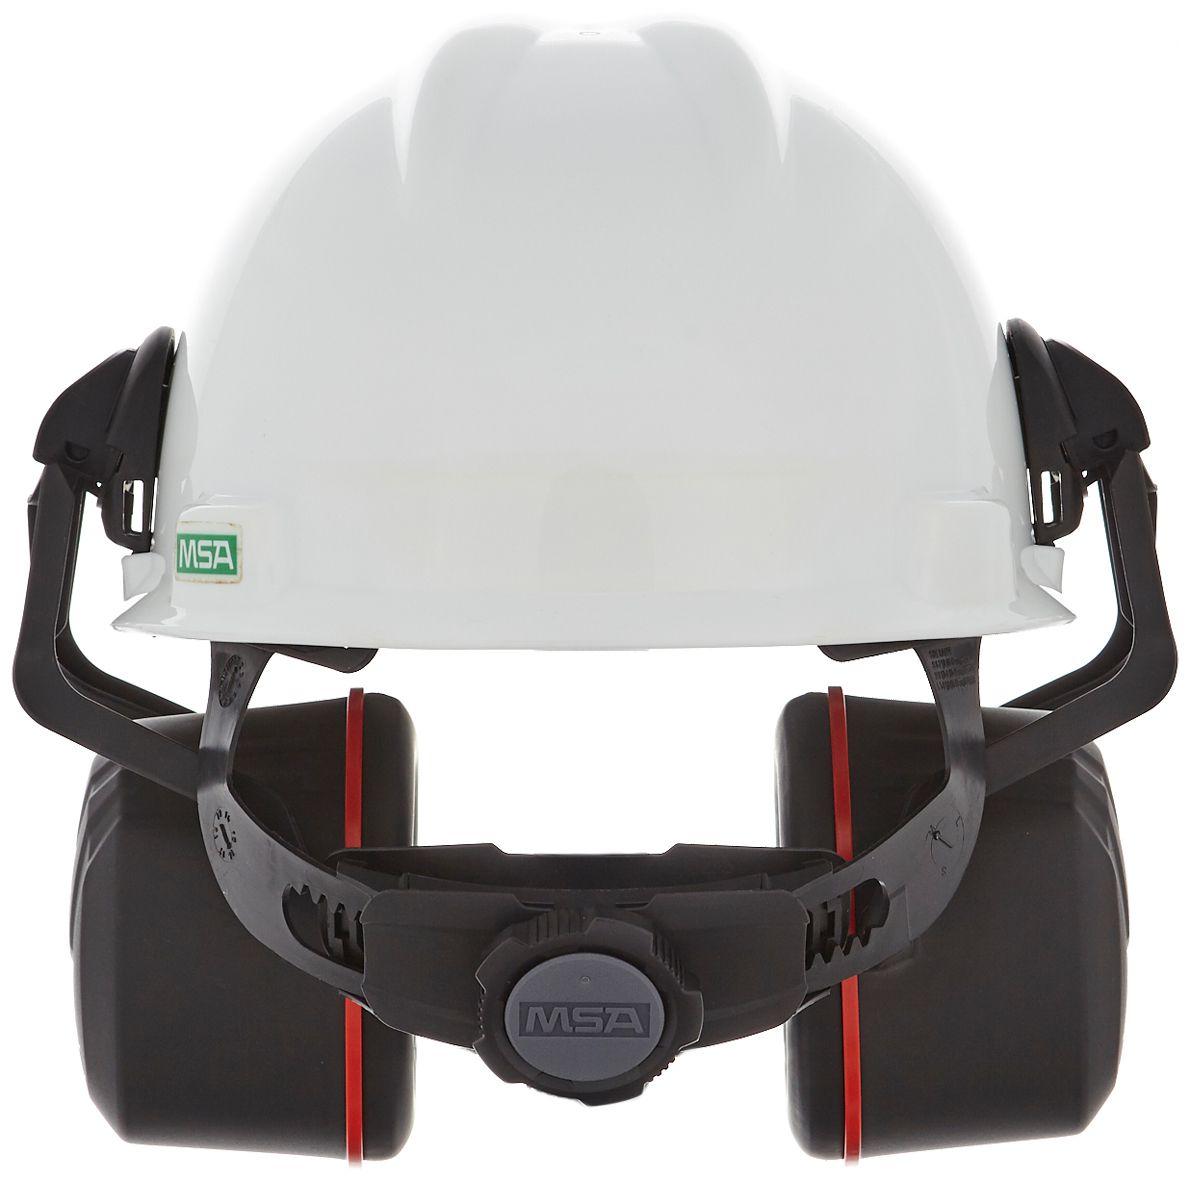 MSA V-Gard Helm-Kapselgehörschutz - Gehörschutz-Kapseln mit Halterung für die Helmmontage - Schwarz/Rot - SNR: 36 dB